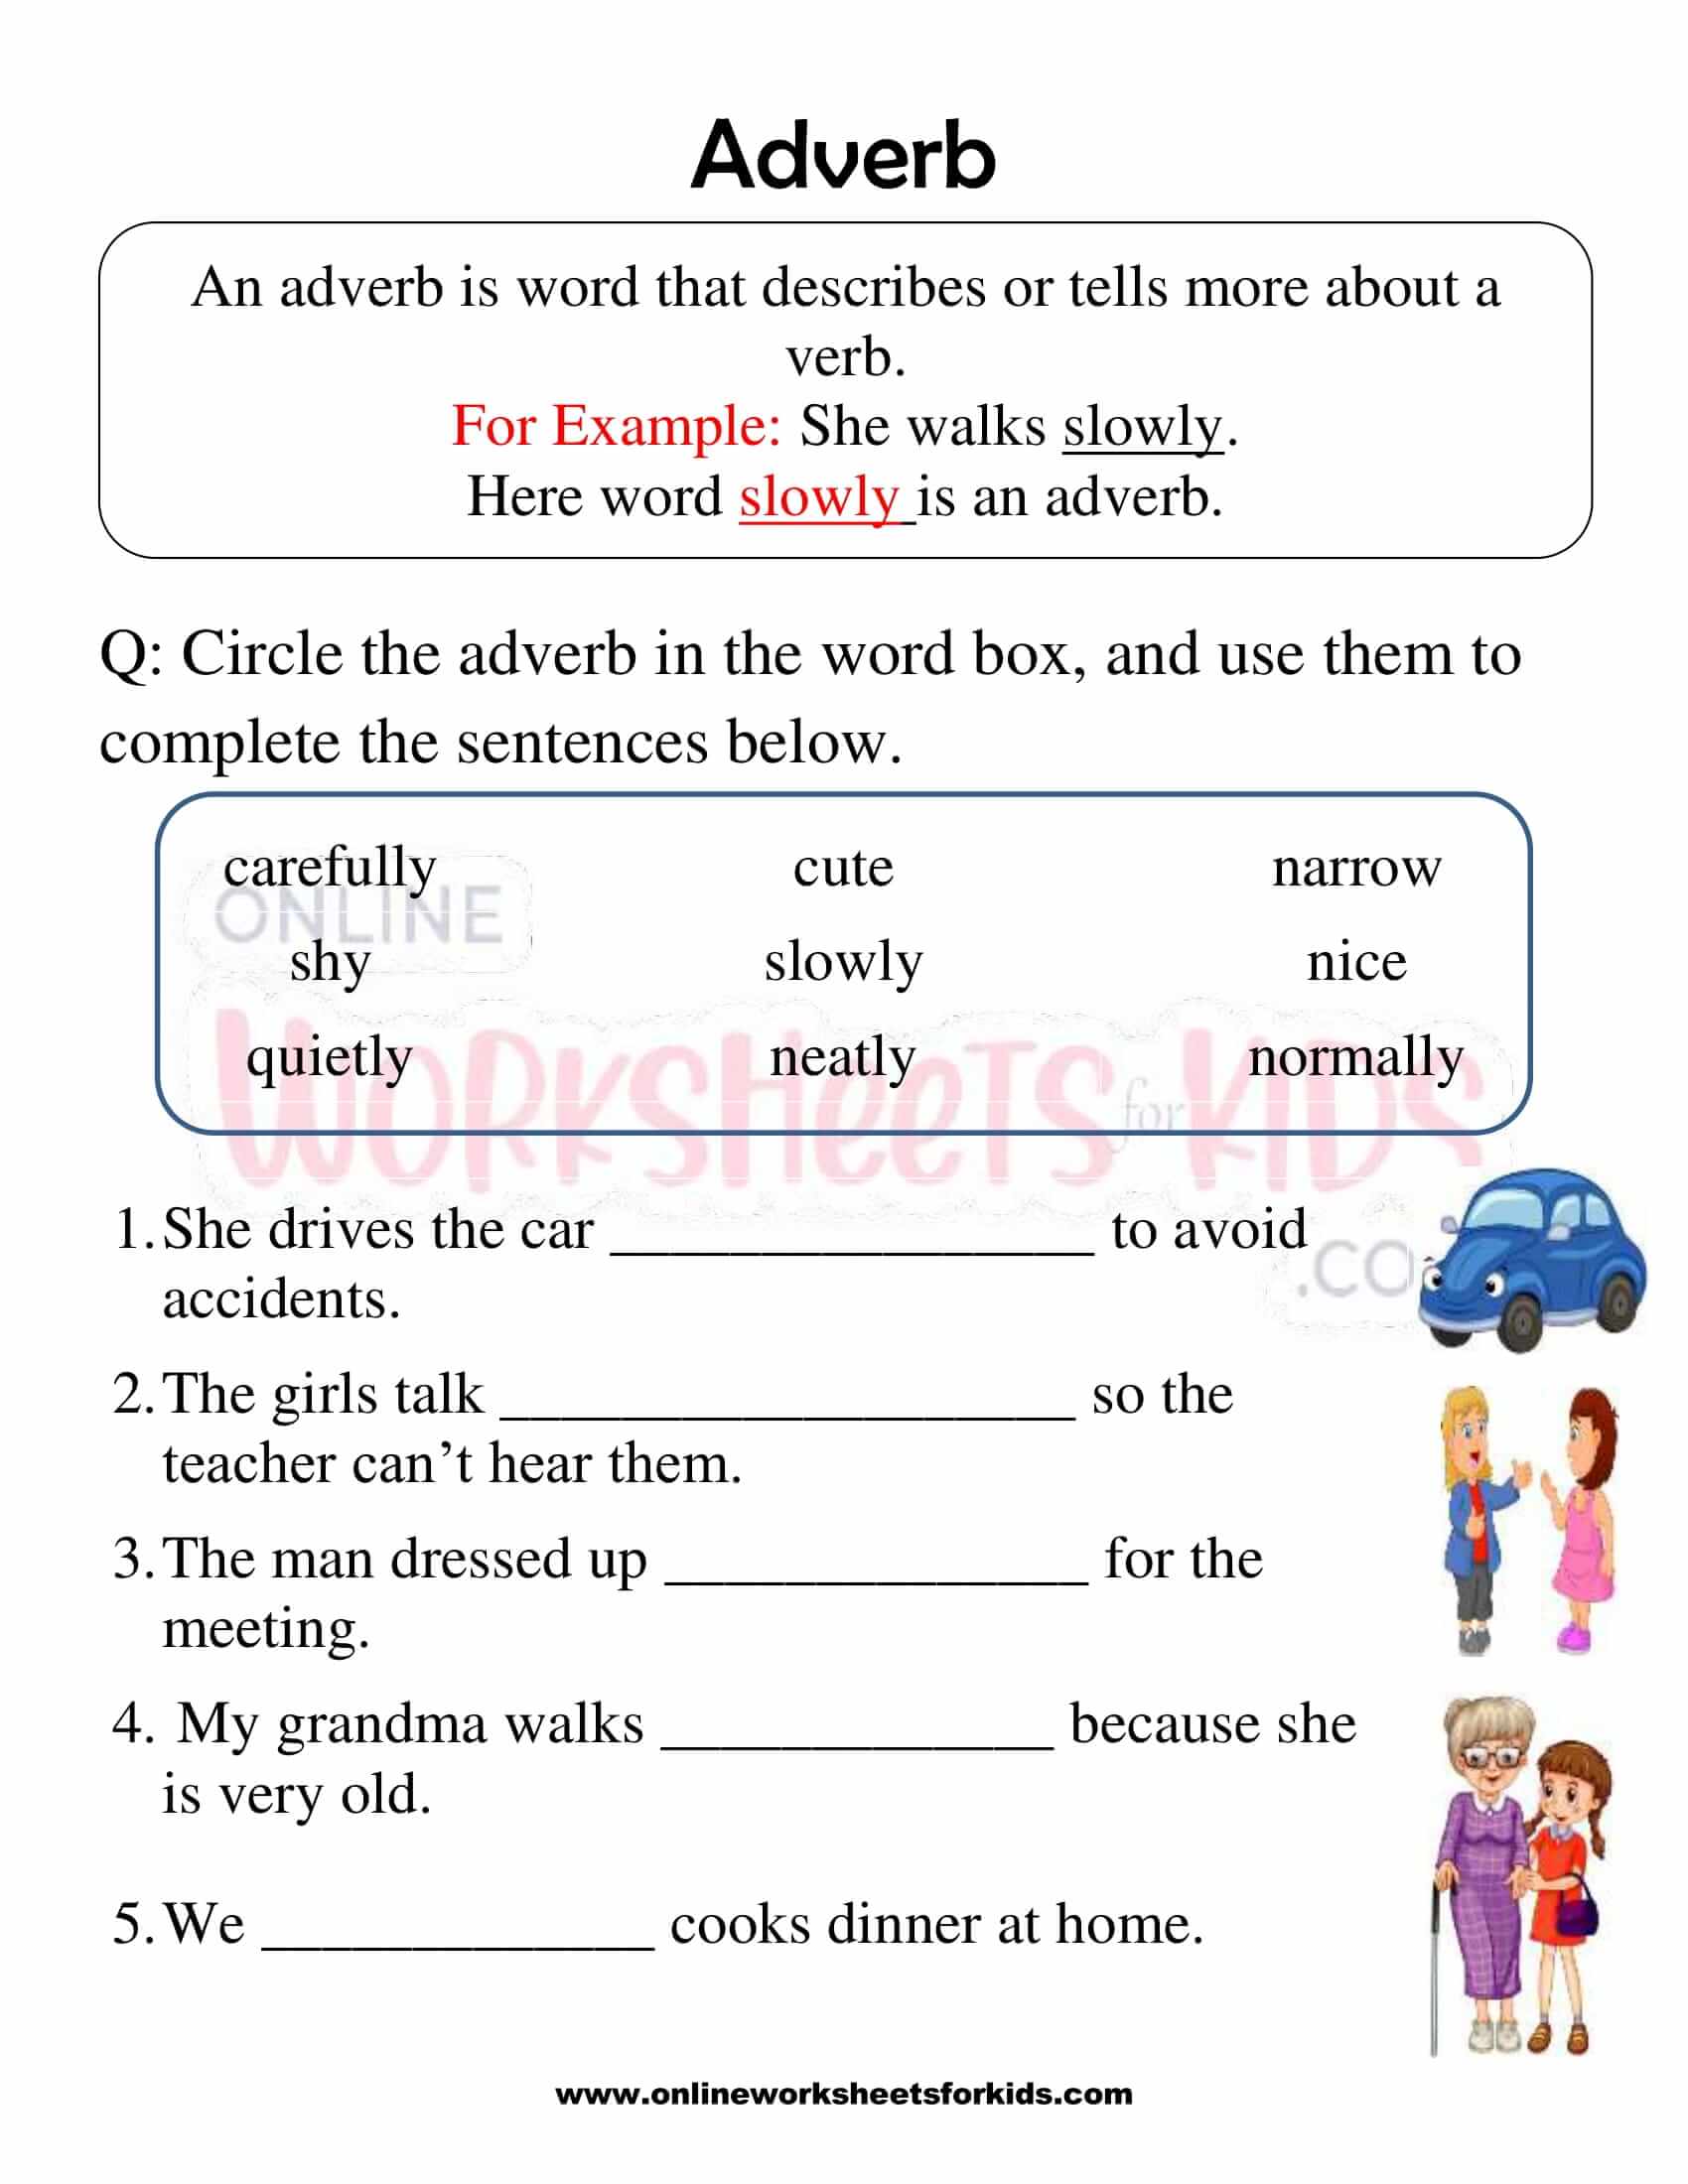 adverb-worksheet-for-grade-1-2